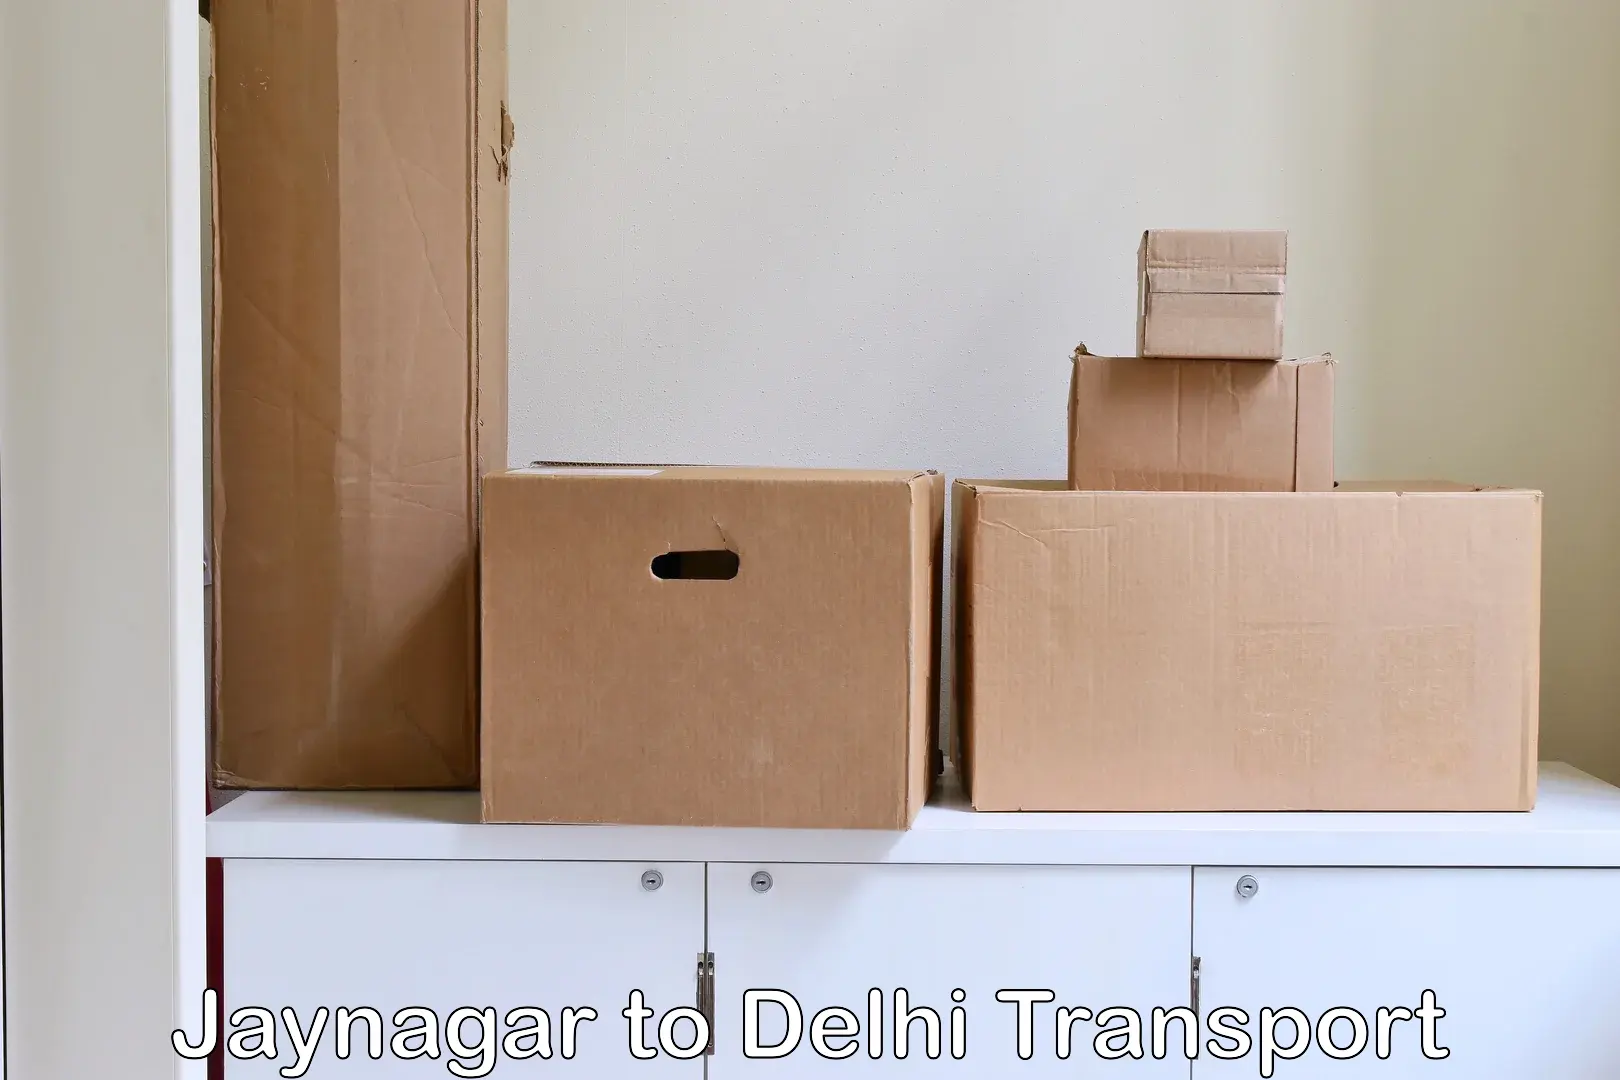 India truck logistics services Jaynagar to Delhi